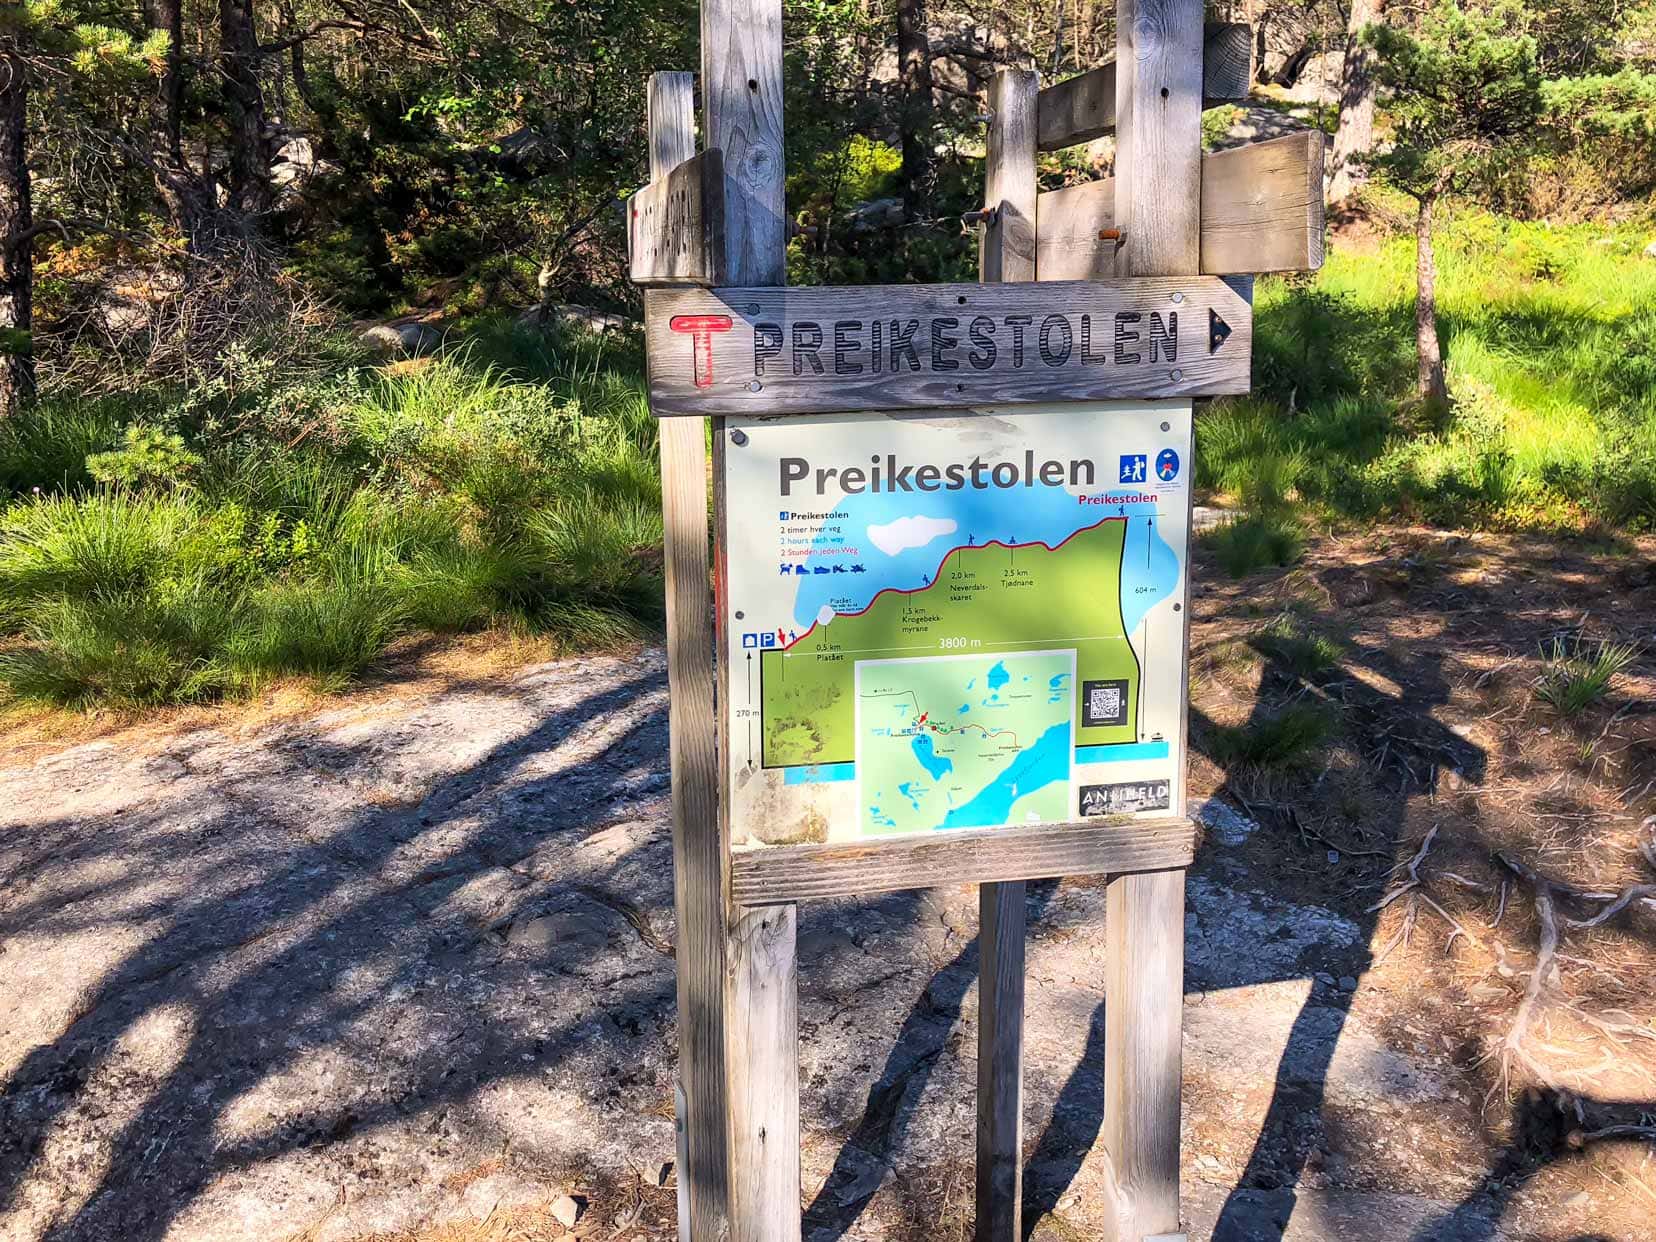 Is-Preikestolen-worth-visiting_trail sign